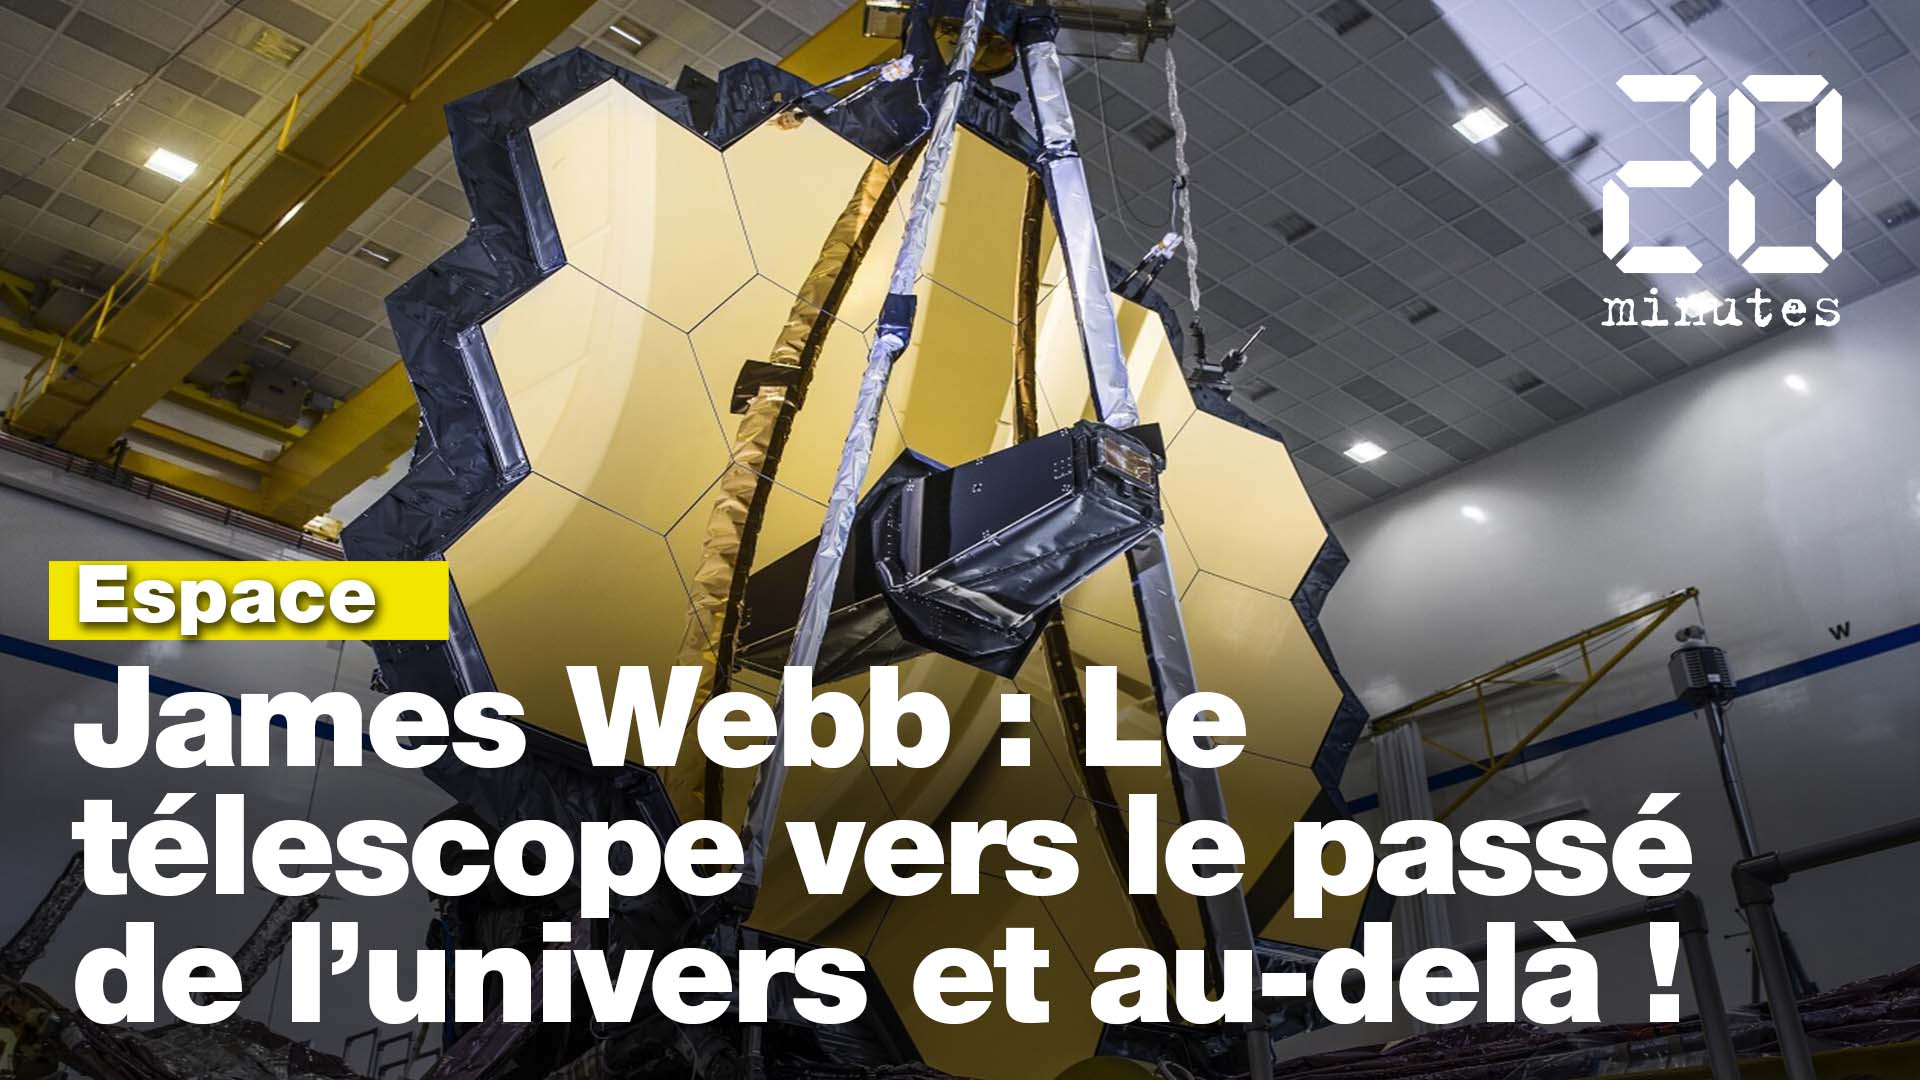 James Webb : Le télescope spatial vers le passé et au-delà